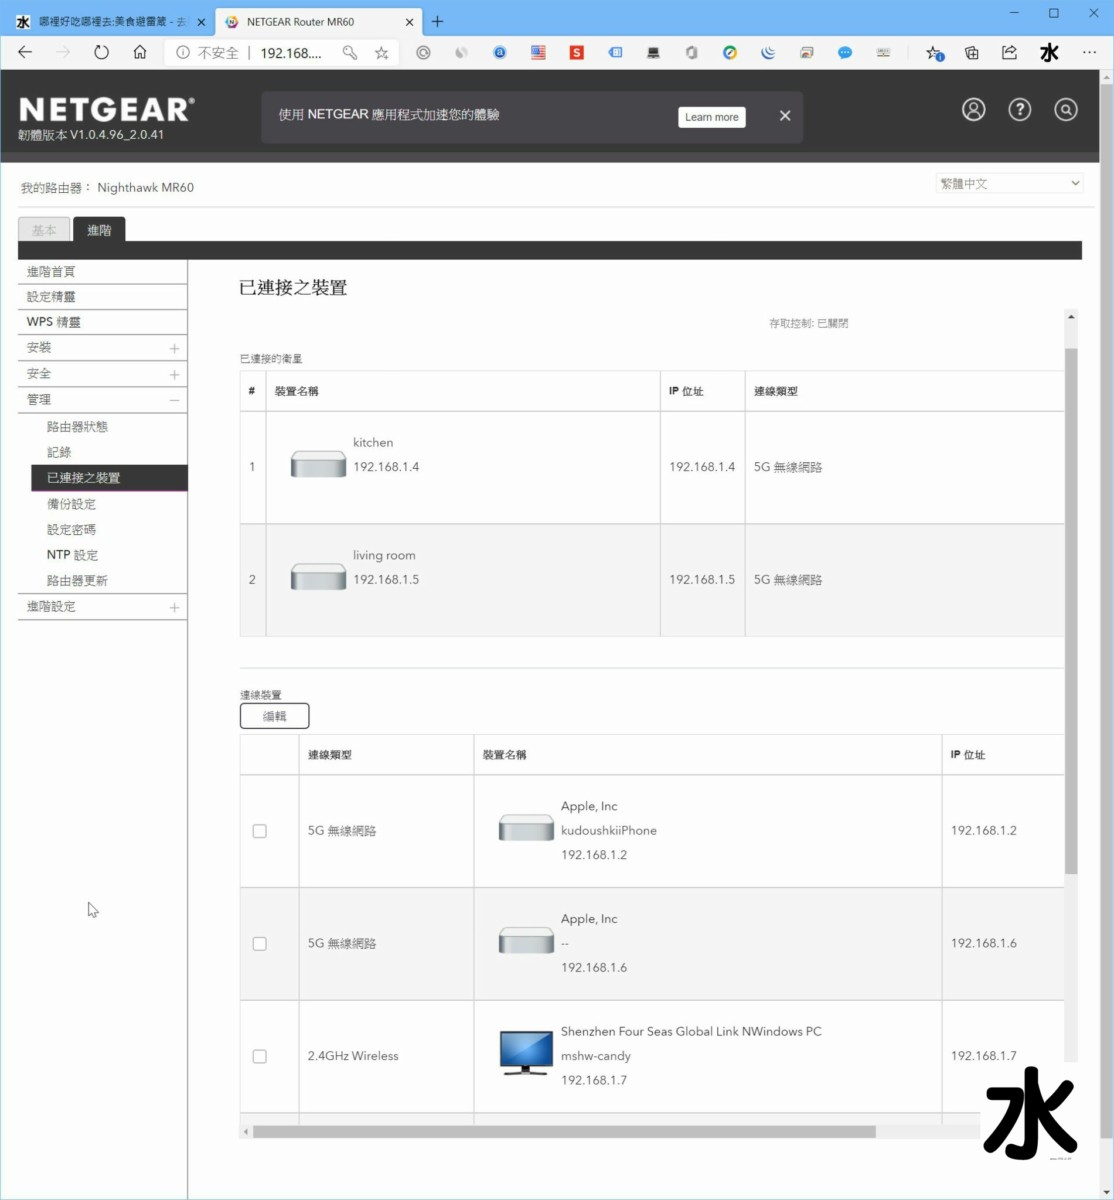 【數位3C】NETGEAR Nightwhak AX1800 MK63 WiFi 6 Mesh網狀網路基地台 : 覆蓋全面超給力,訊號較弱也不掉封包 3C/資訊/通訊/網路 新聞與政治 硬體 網路 網通設備 試吃試用業配文 